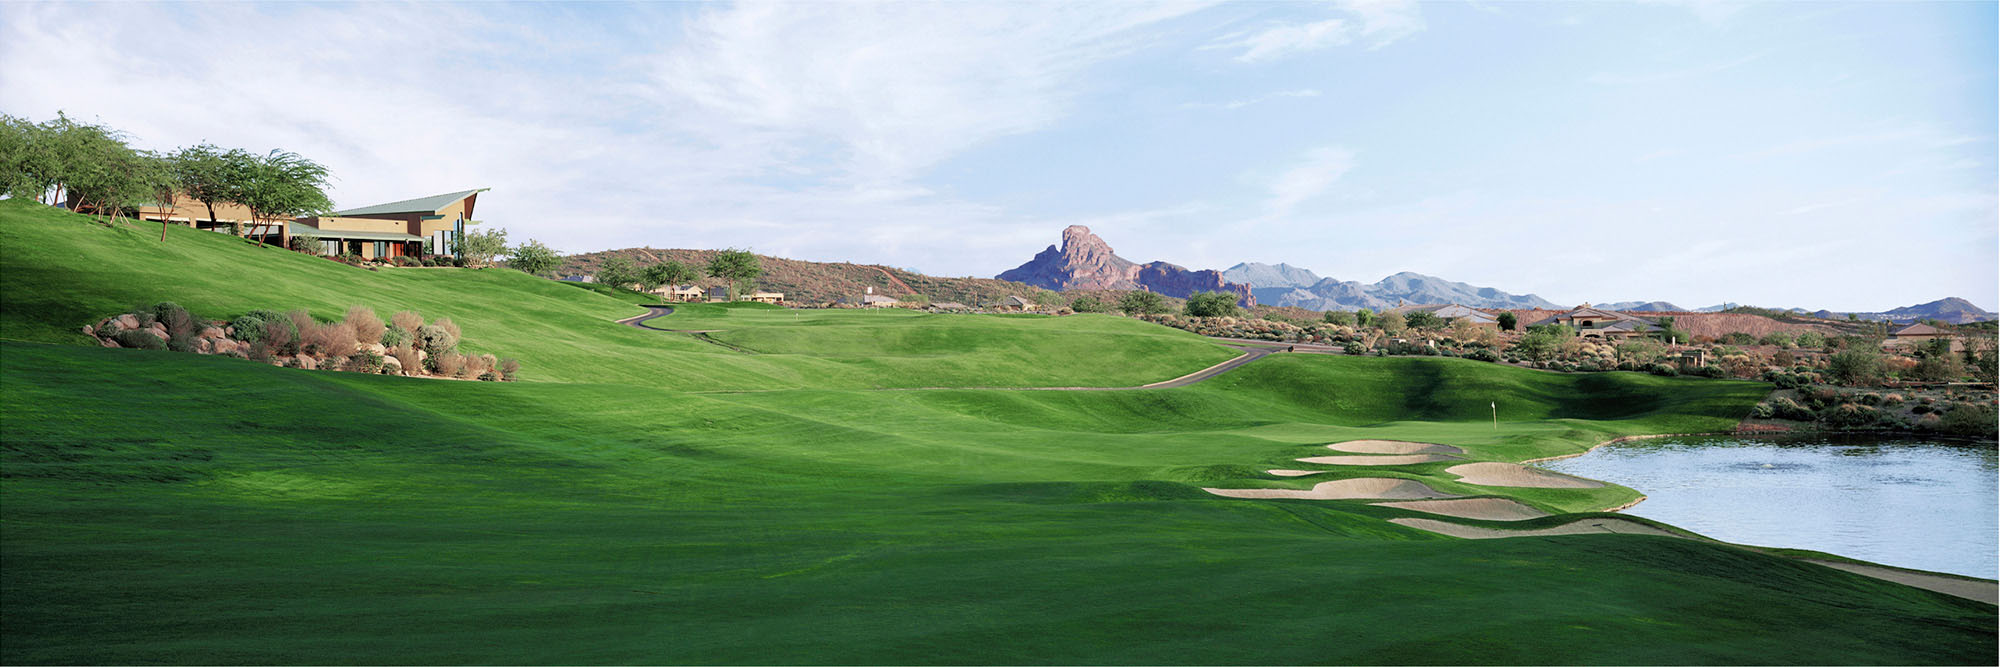 Golf Course Image - Eagle Mountain No. 18